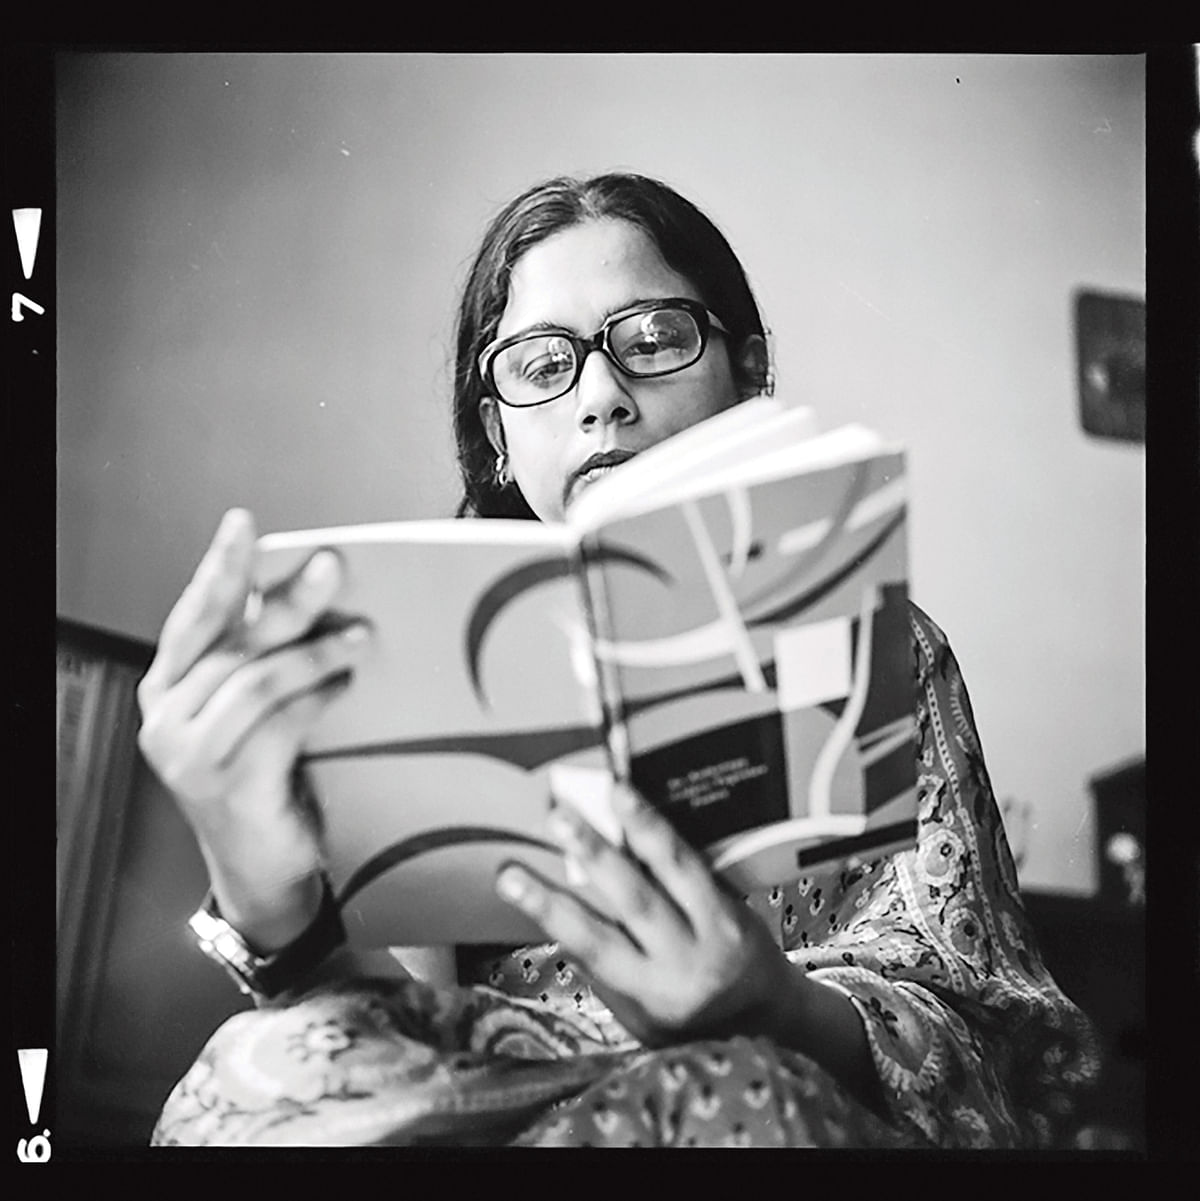 ১৯৮১ সালে রিজিয়া রহমান। ছবি: নাসির আলী মামুন/ফটোজিয়াম